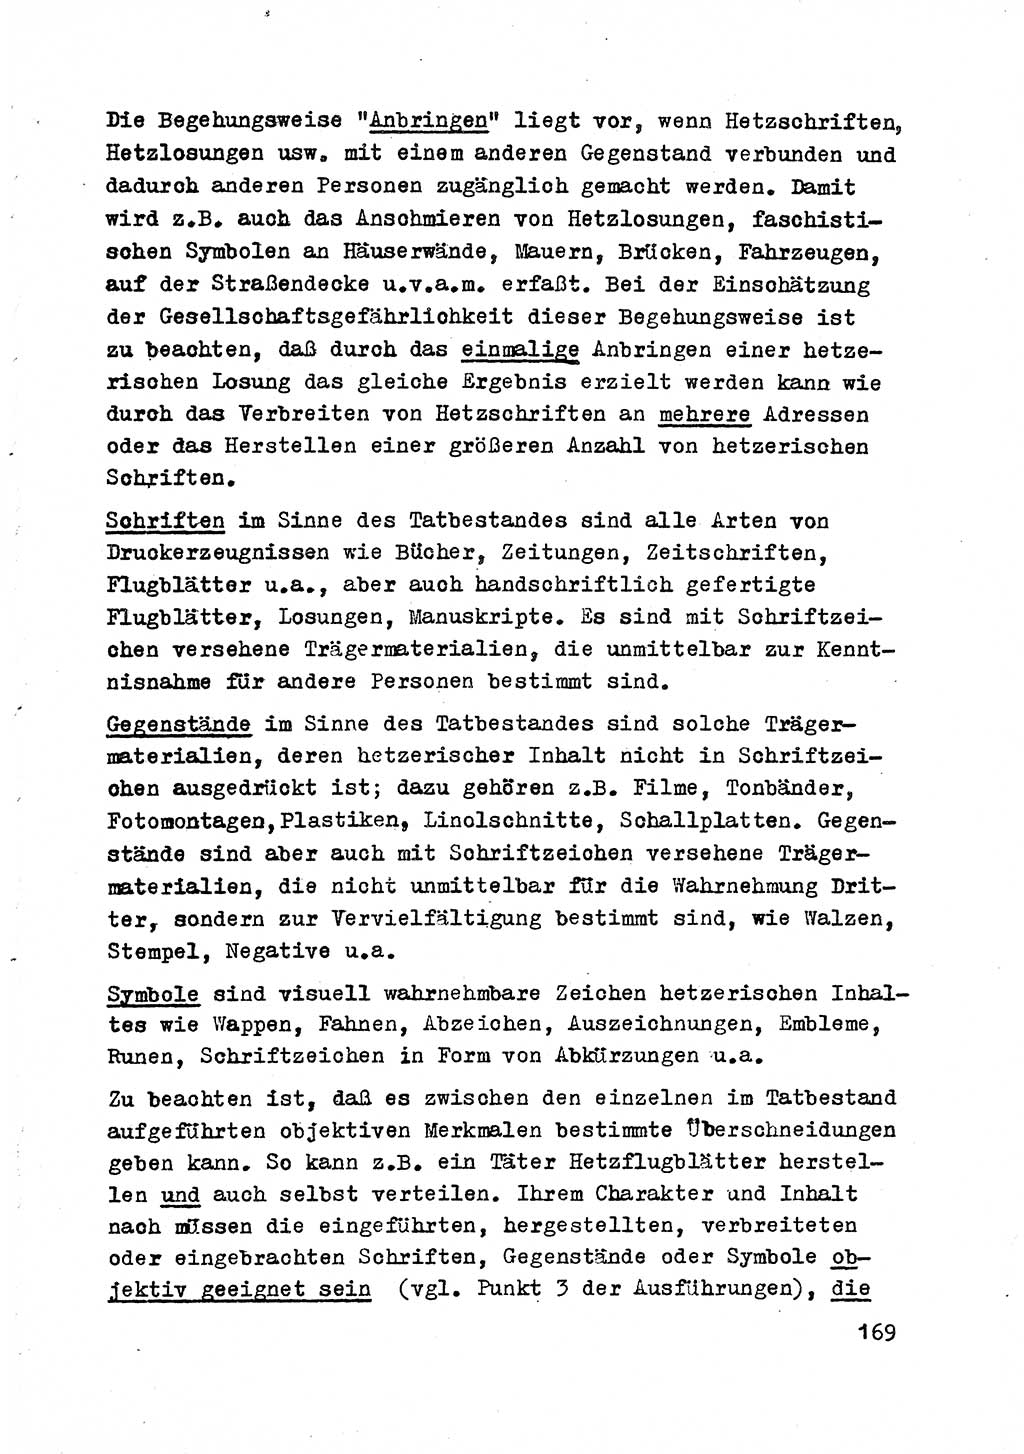 Strafrecht der DDR (Deutsche Demokratische Republik), Besonderer Teil, Lehrmaterial, Heft 2 1969, Seite 169 (Strafr. DDR BT Lehrmat. H. 2 1969, S. 169)